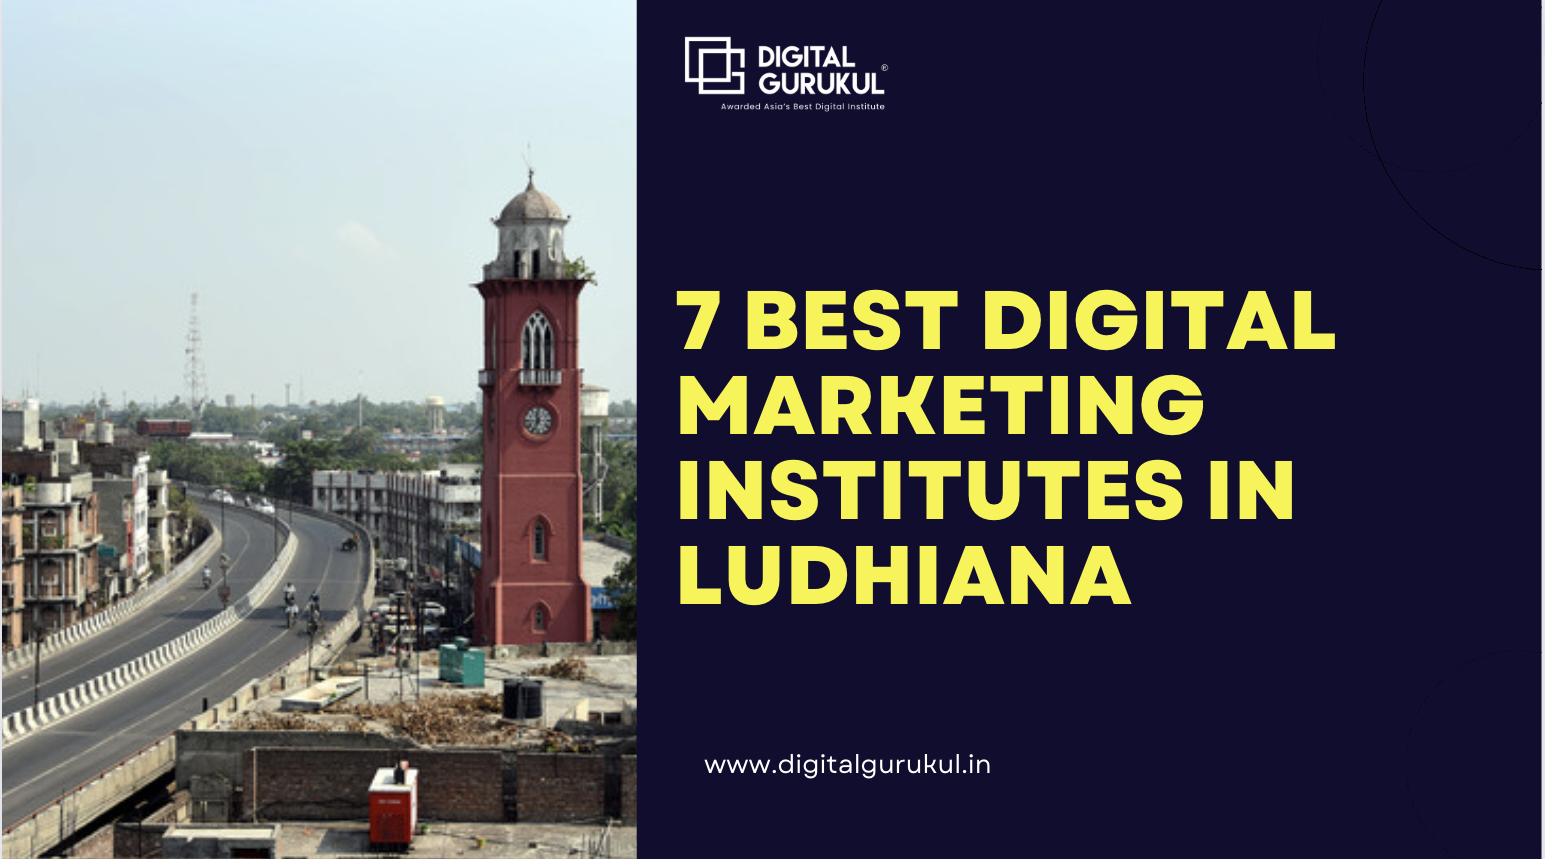 7 Best Digital Marketing Institutes in Ludhiana